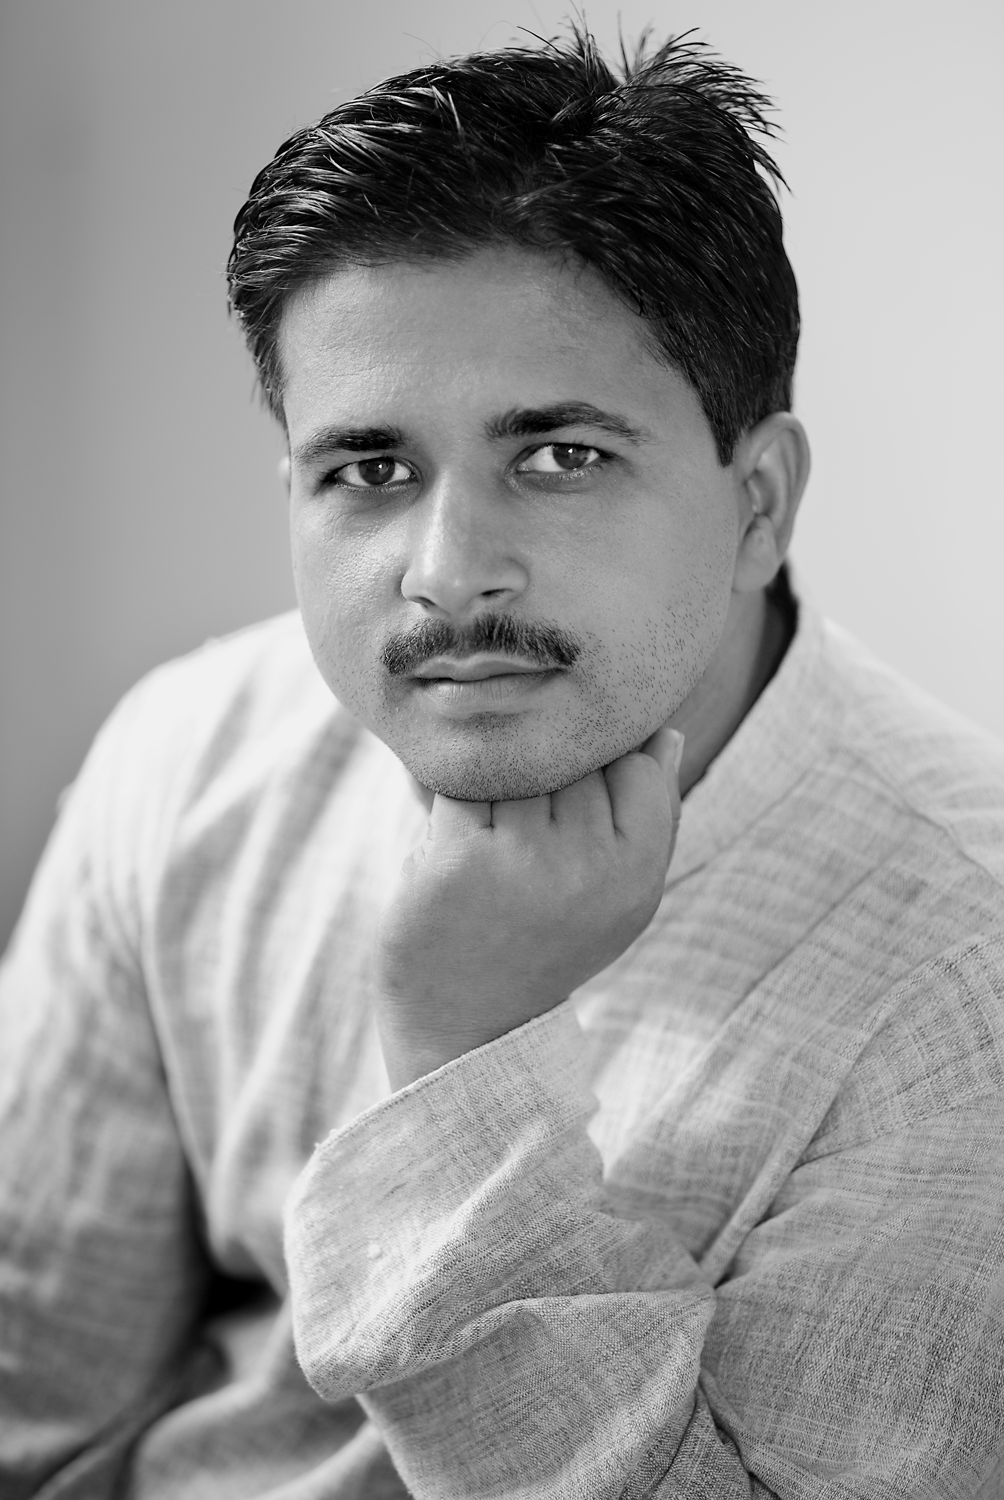 Gyan Prakash, Banares, India